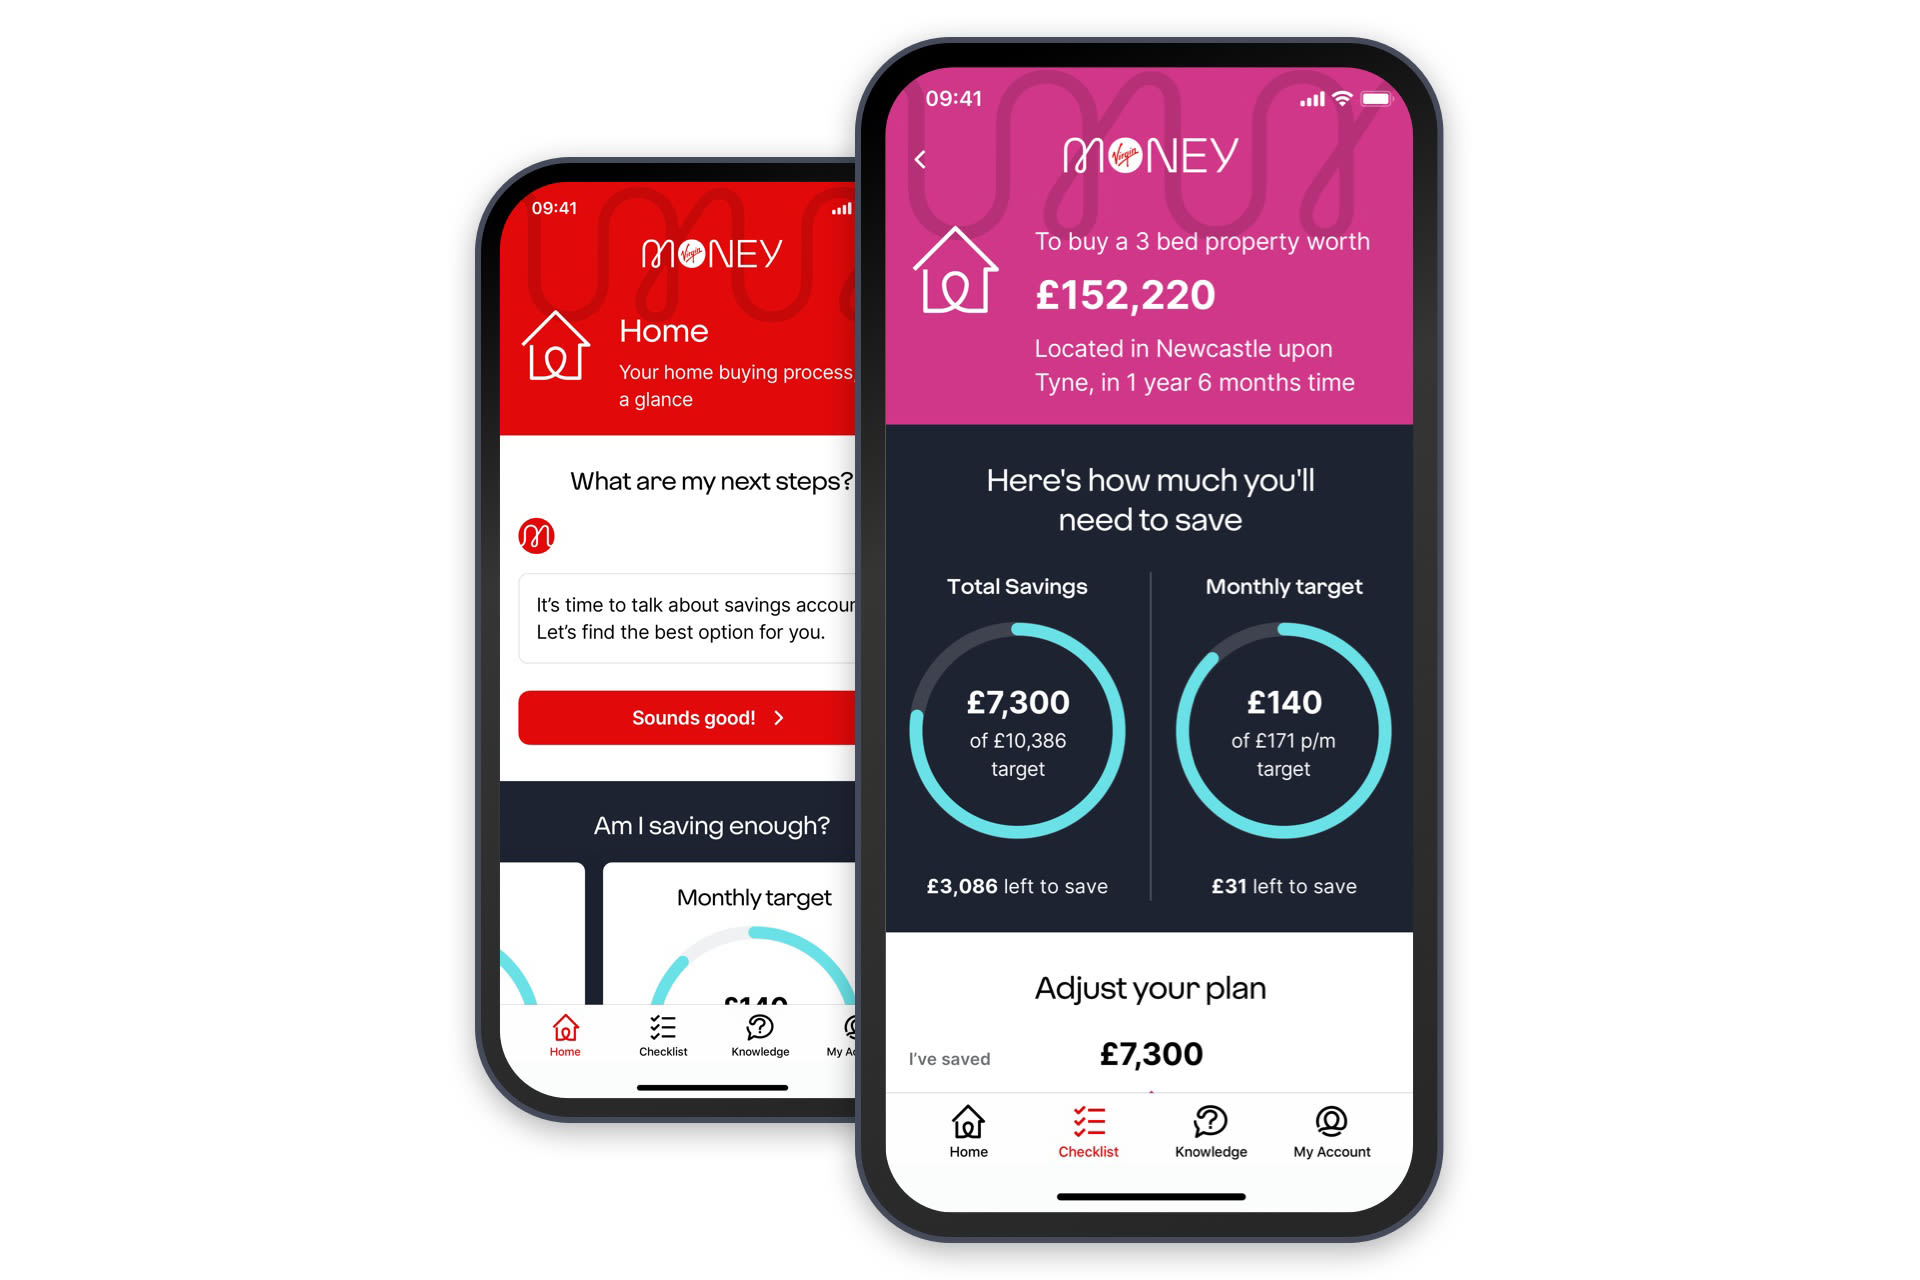 Virgin Money Home Buying Coach app